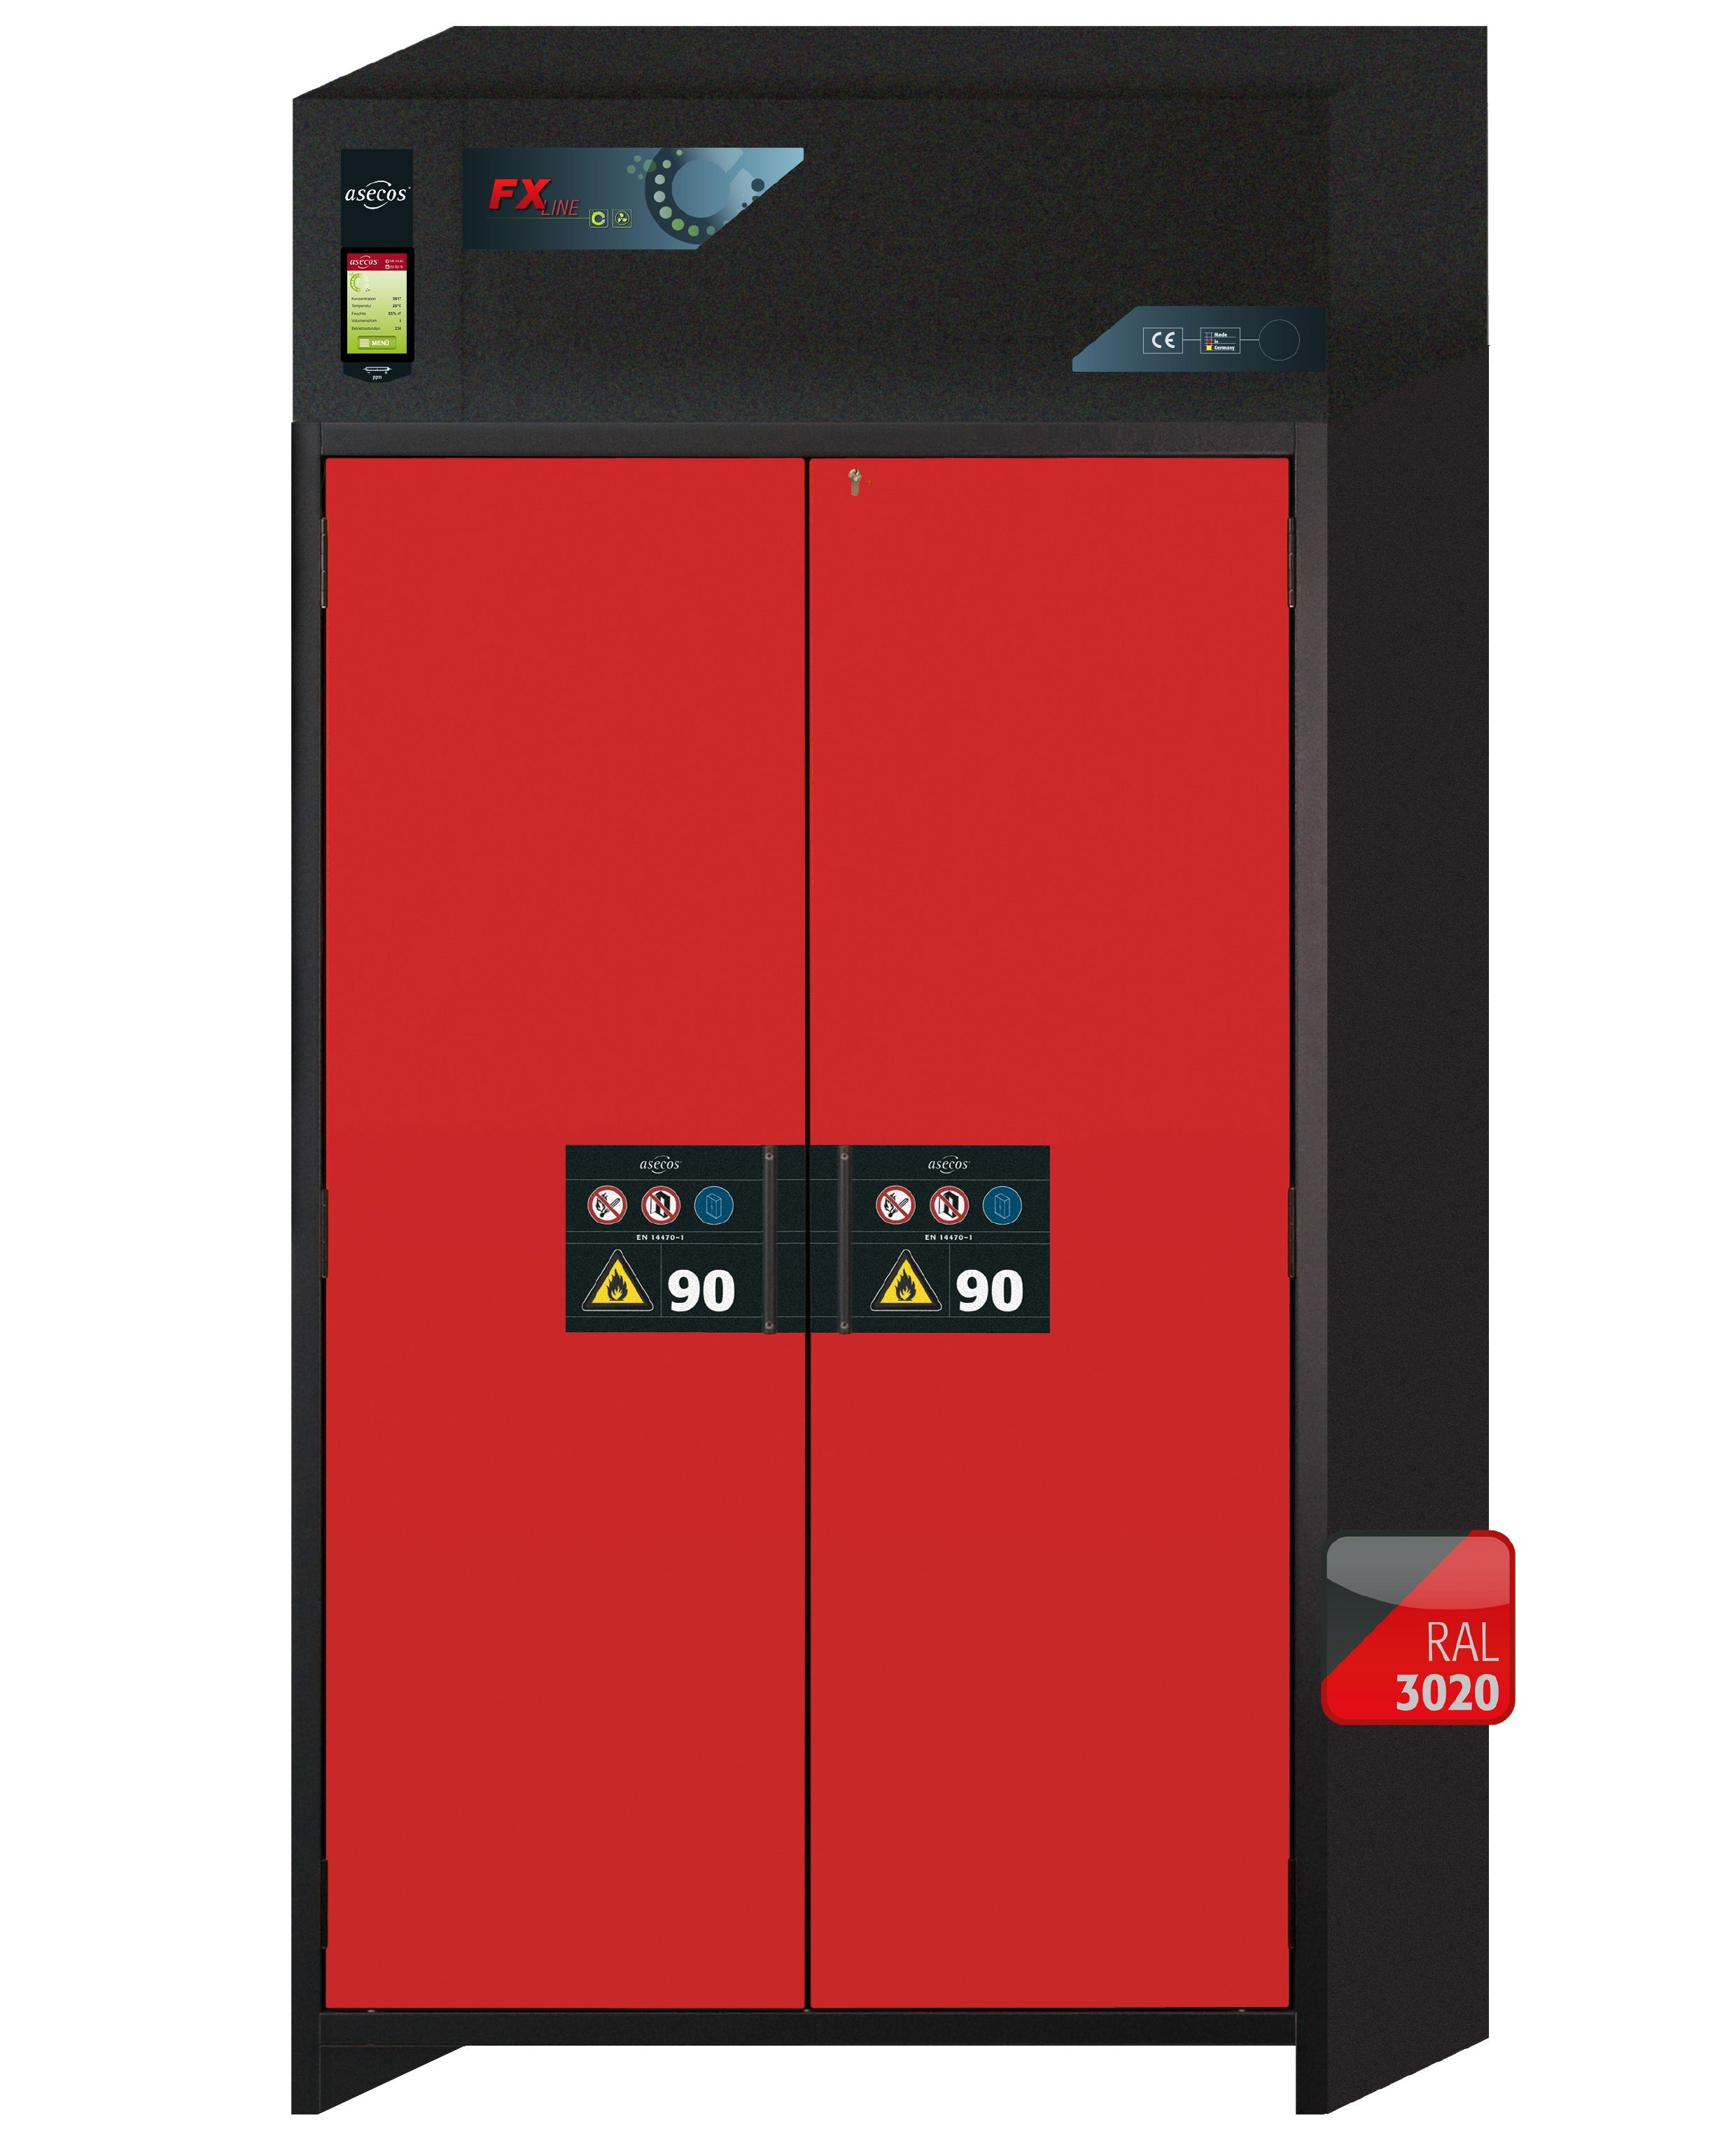 Armoire de filtration d'air de recirculation de type 90 FX-CLASSIC-90 modèle FX90.229.120.MV en rouge signalisation RAL 3020 avec 3 étagères standard (acier inoxydable 1.4301)